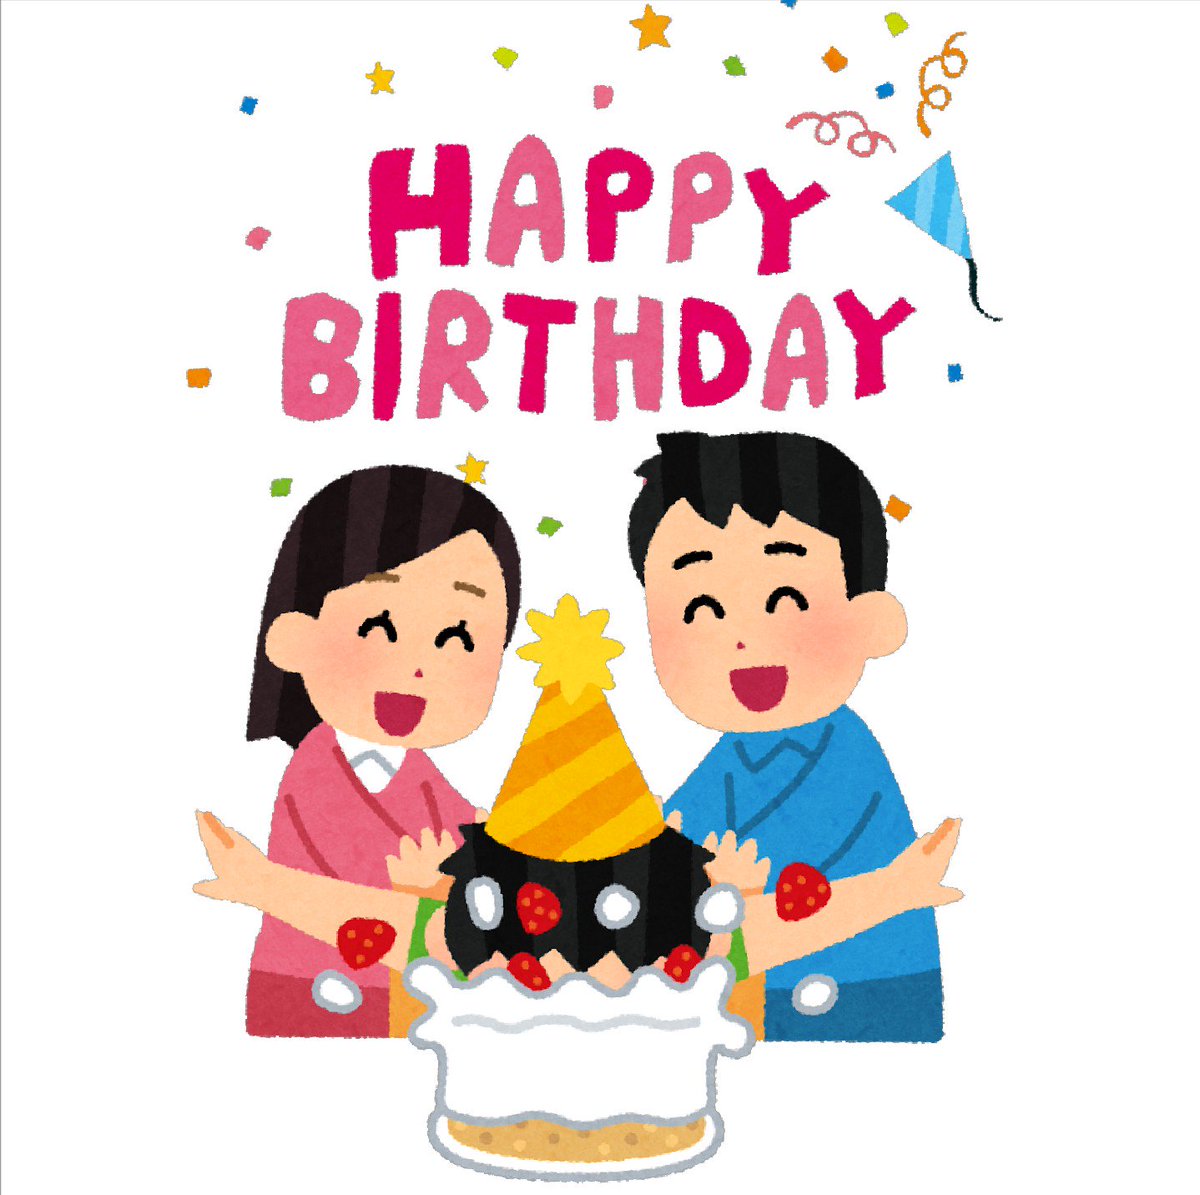 まいチクをいらすとやで再現 Dayukoume お誕生日おめでとうございます 使ったイラスト 2枚 誕生日のイラスト Happy Birthday タイトル文字 誕生日ケーキに顔を突っ込まれる人のイラスト T Co Kjqqgi9vds Twitter